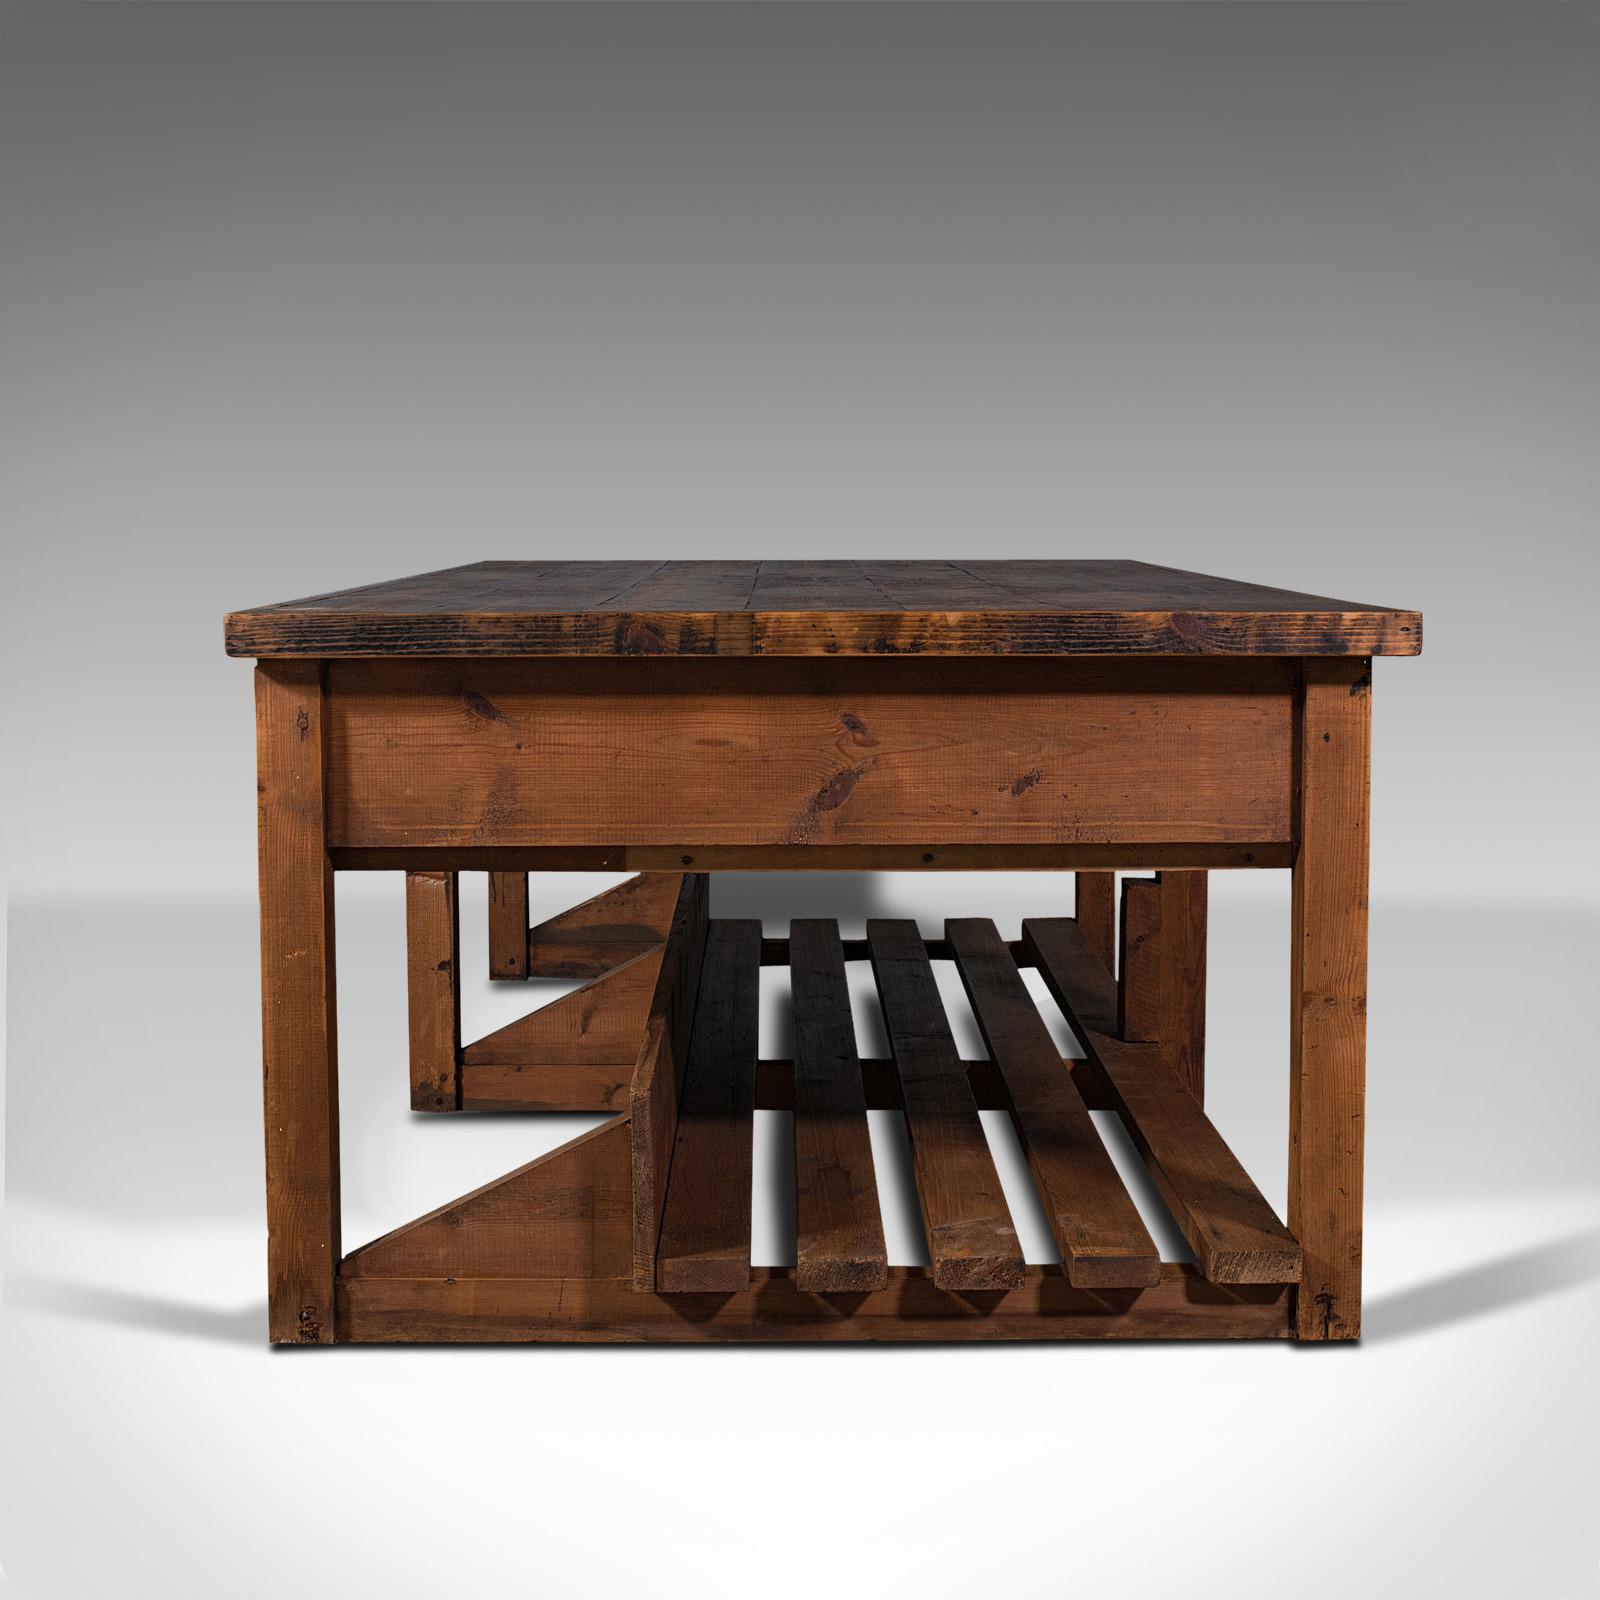 British Large Antique Craftsman's Table, Pine, Kitchen Island, Retail, Bench, Victorian